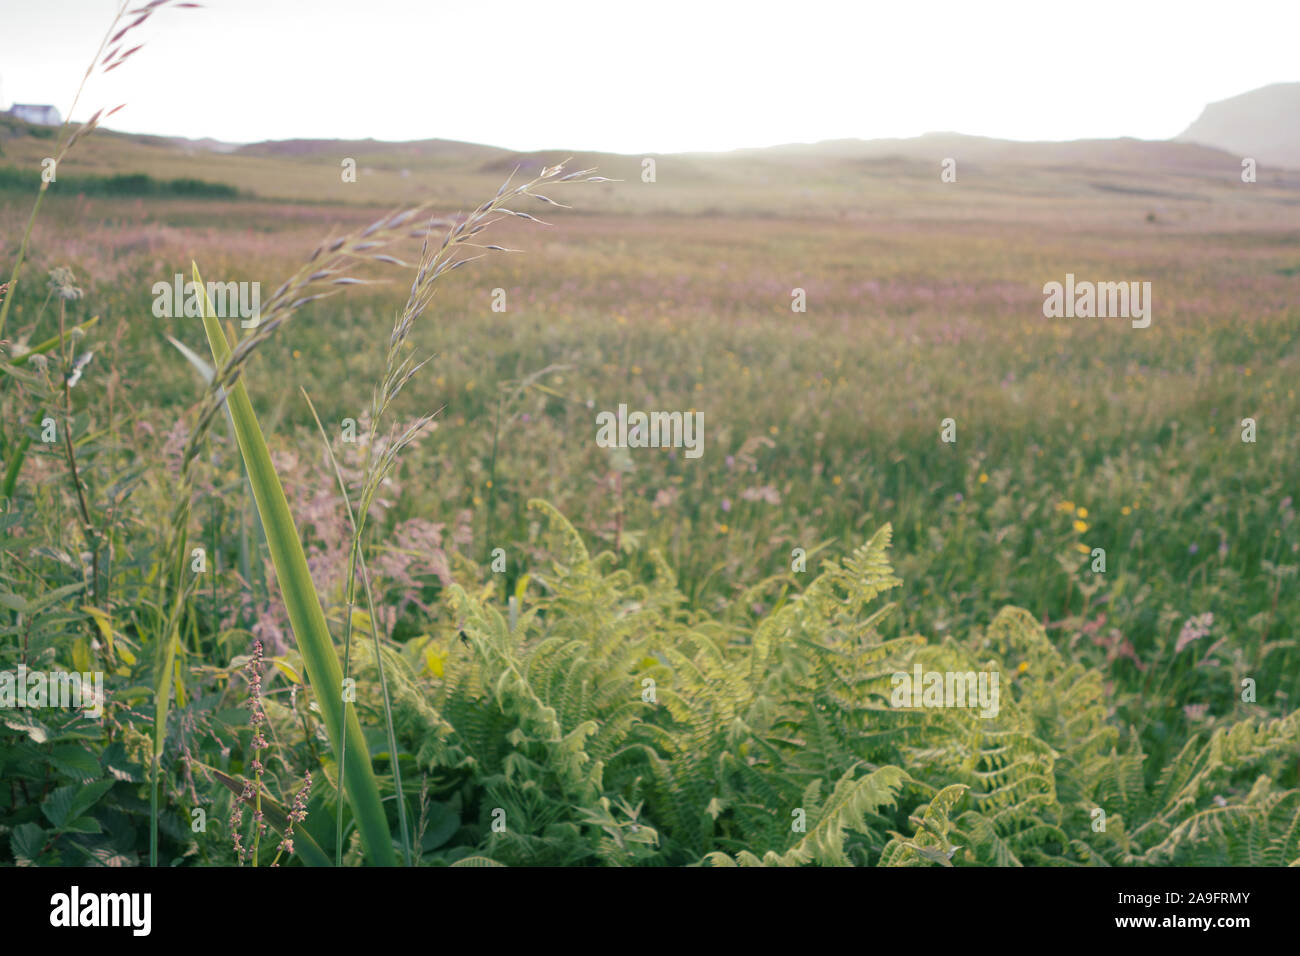 Rich grasslands in Ireland Stock Photo